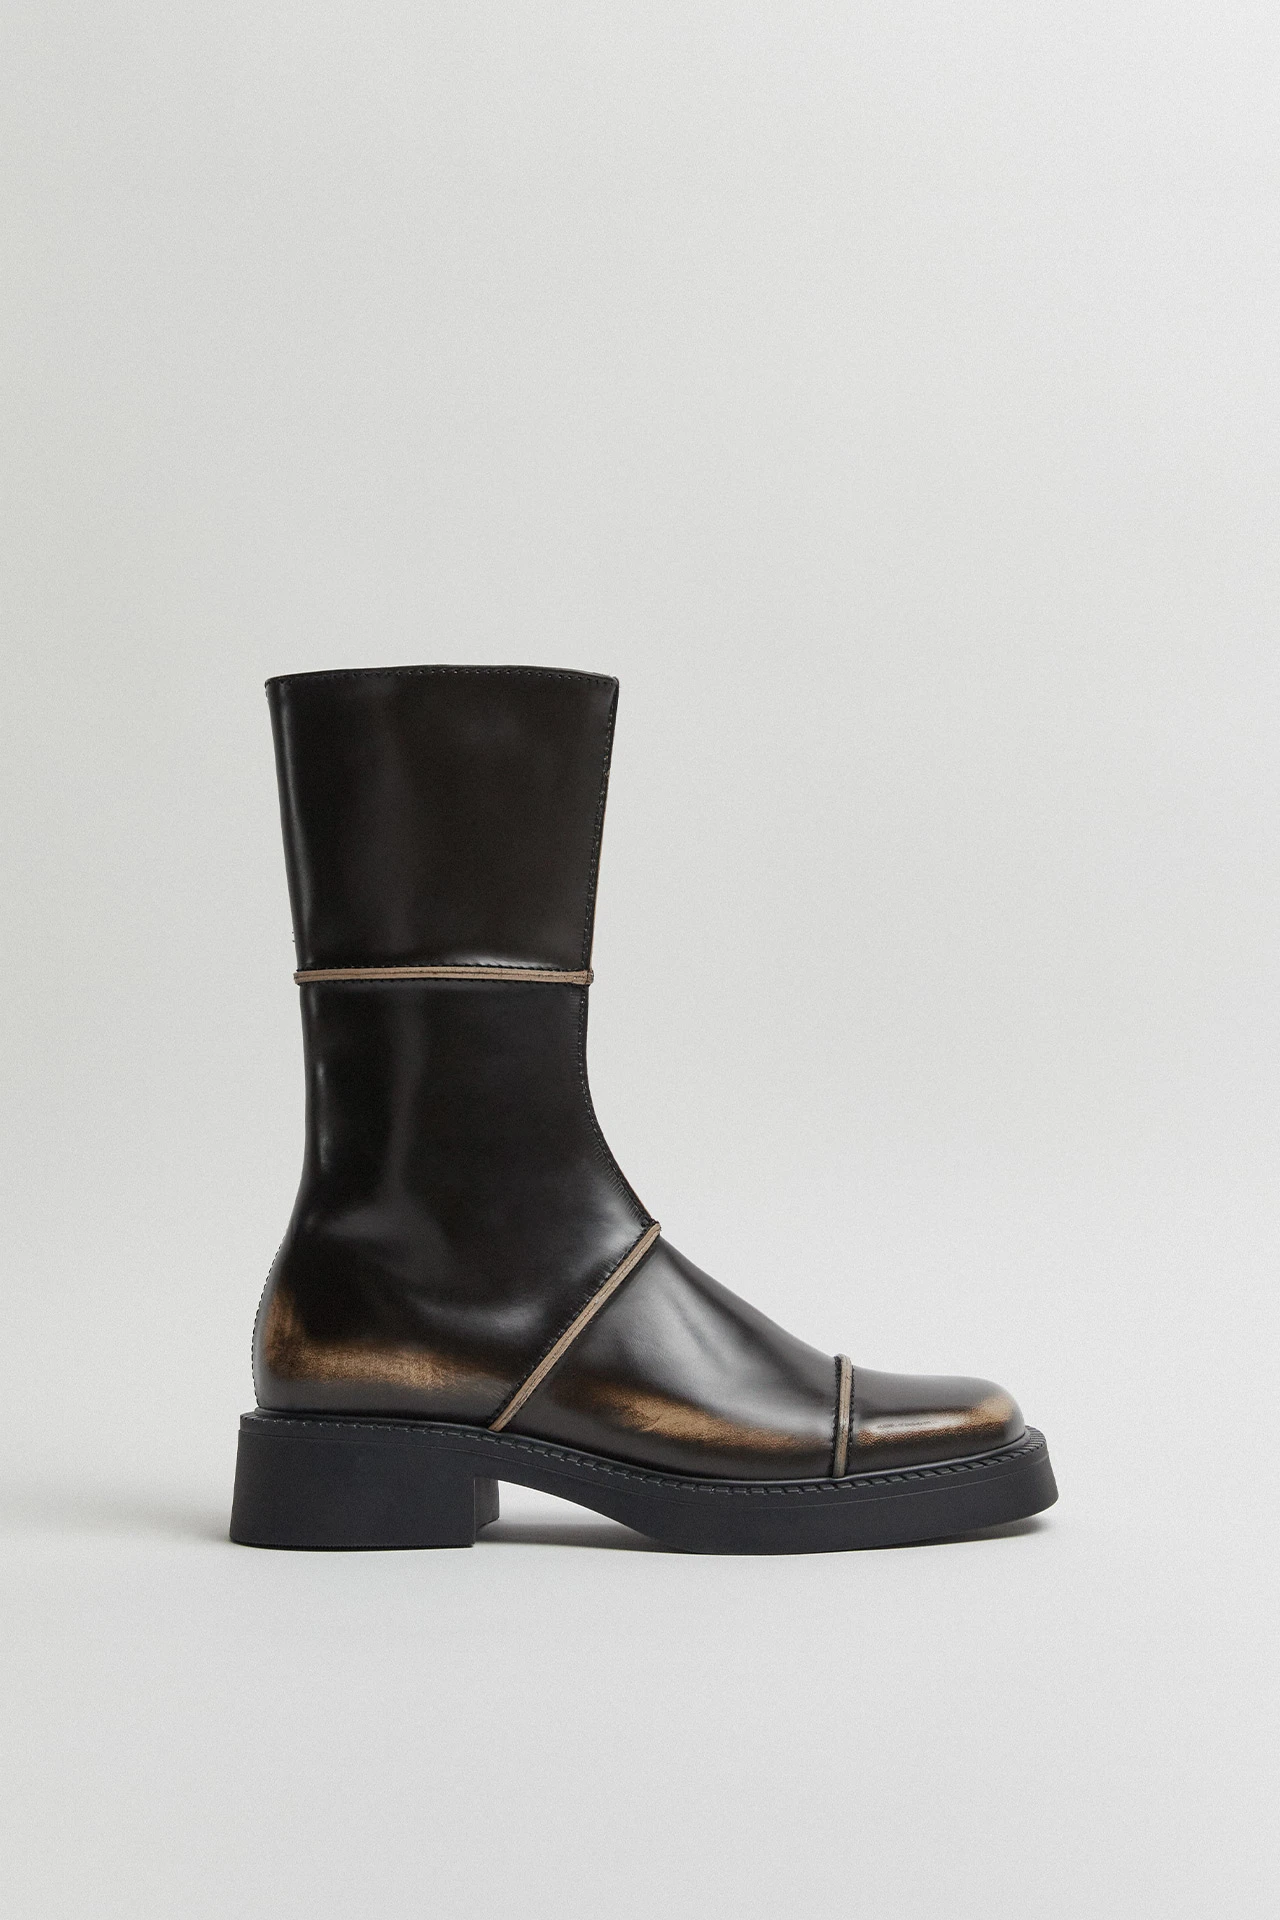 E8-dahlia-brown-boots-01